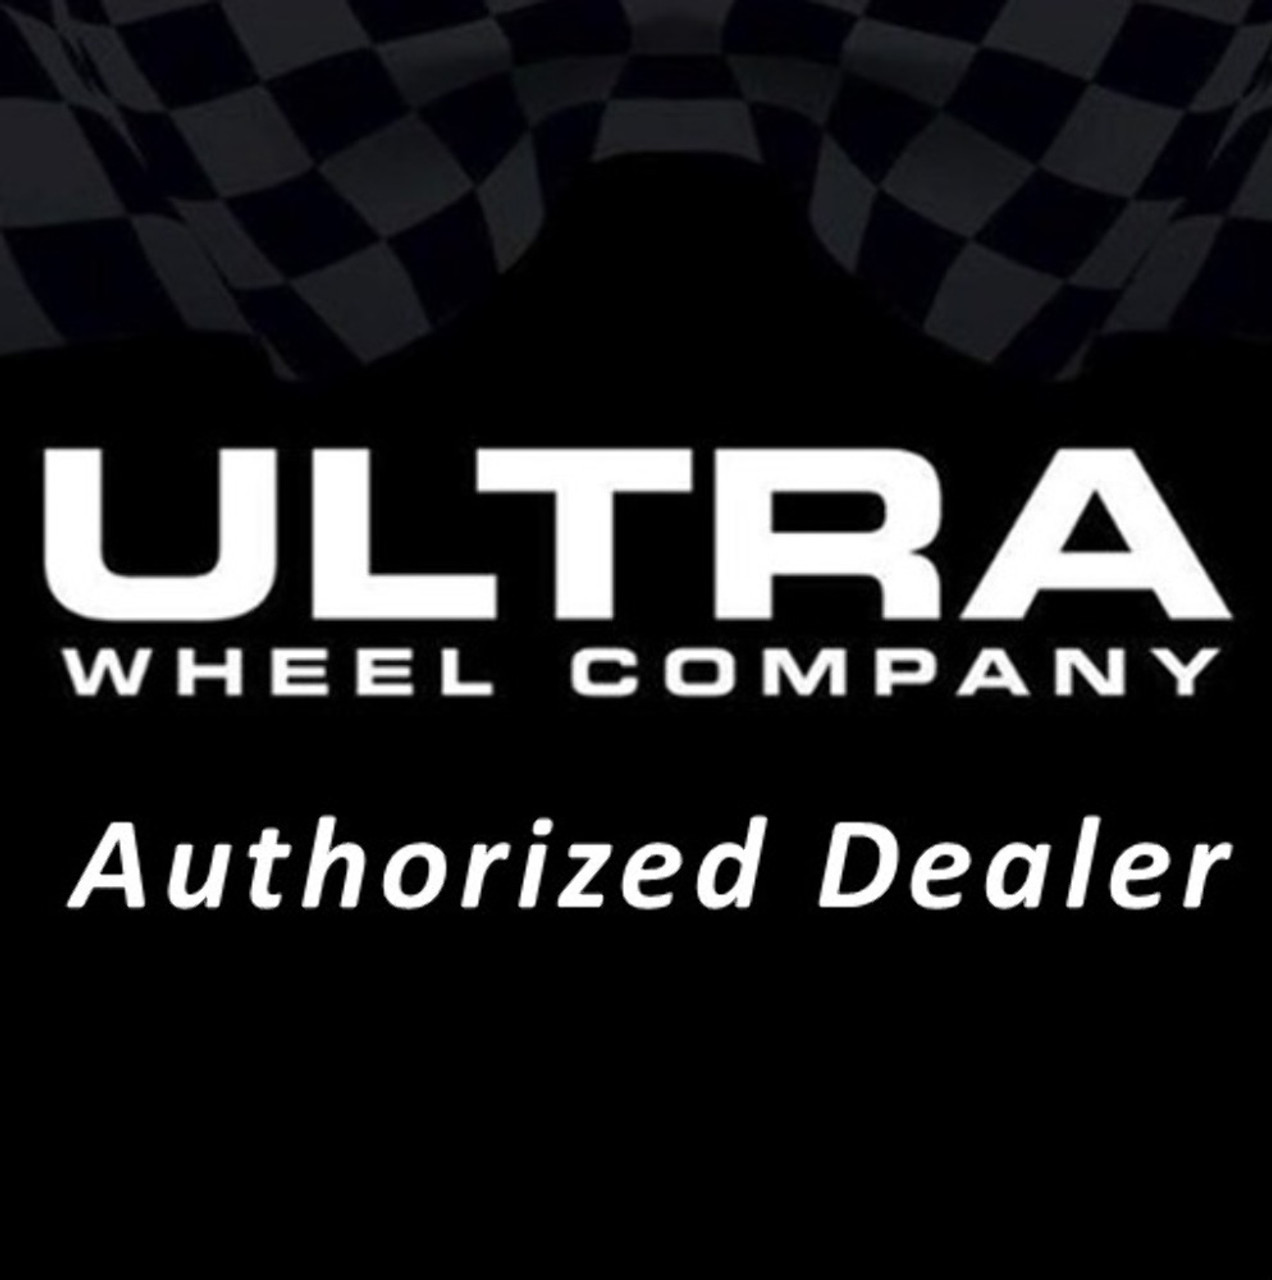 18" Ultra 123BK Scorpion 18x9 6x135 6x5.5 Gloss Black Clear Coat Wheel 12mm Rim